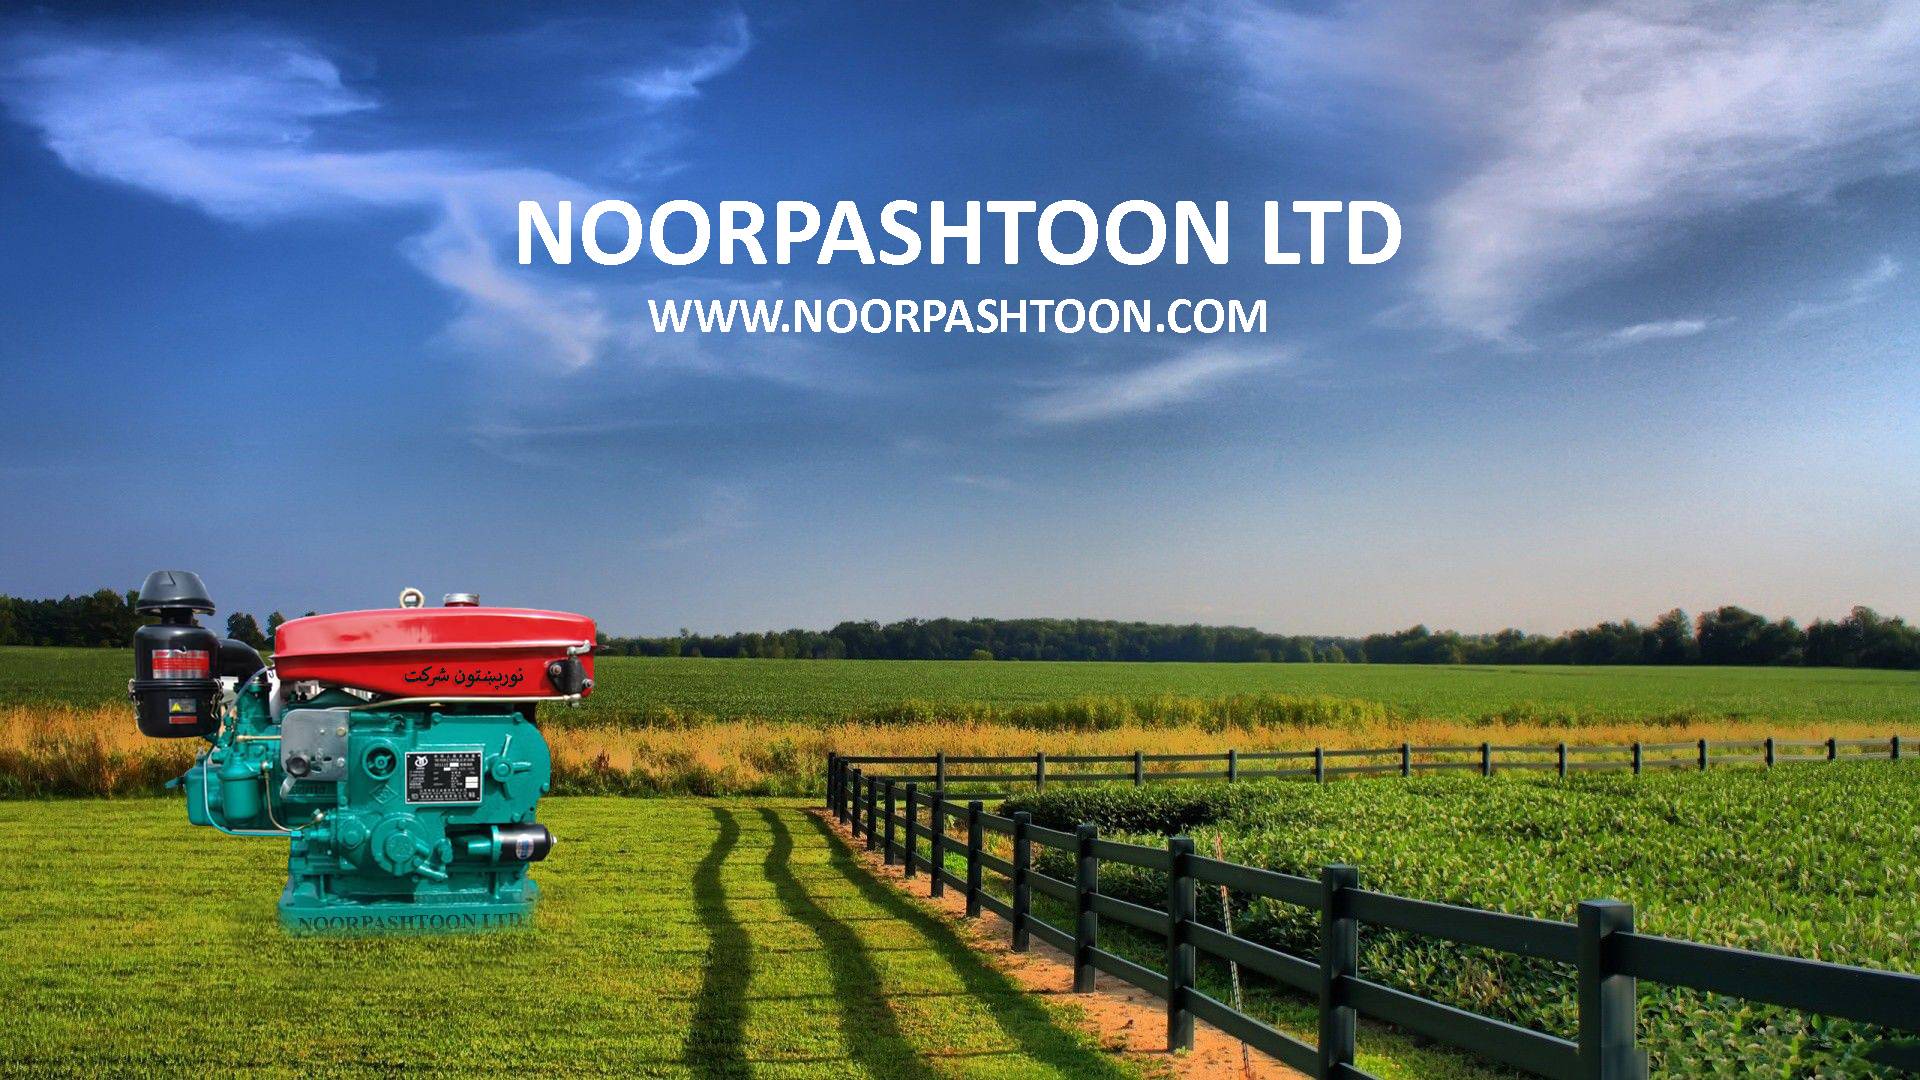 NOORPASHTOON AGRICULTURAL DIESEL ENGINES